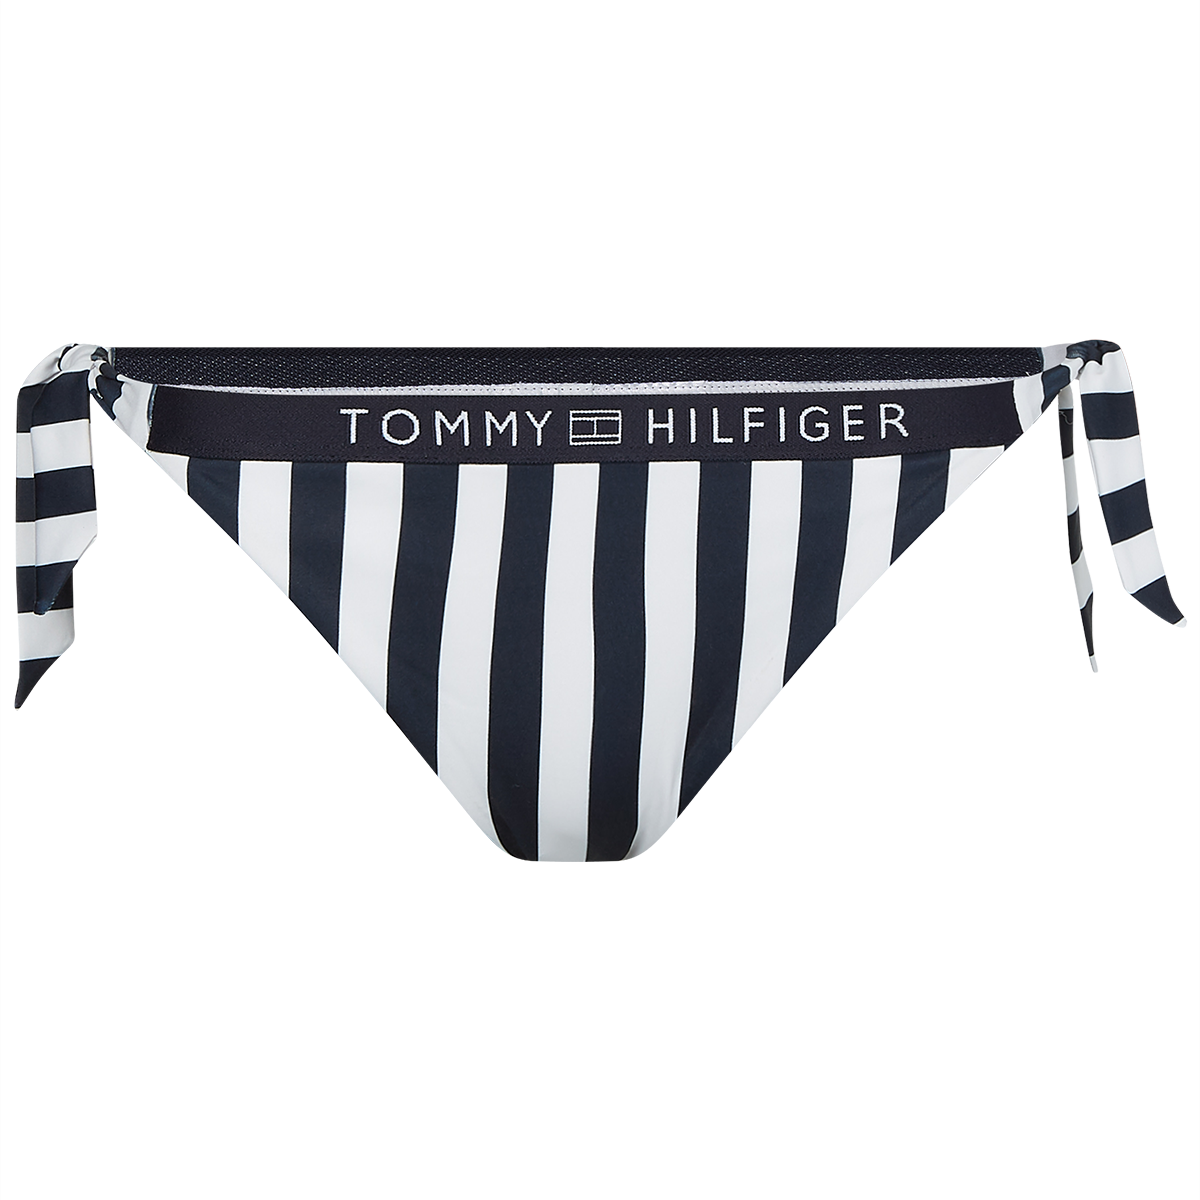 Tommy Hilfiger Lingeri Bikini Tai trusse, Farve: Sort/Hvid, Størrelse: XS, Dame